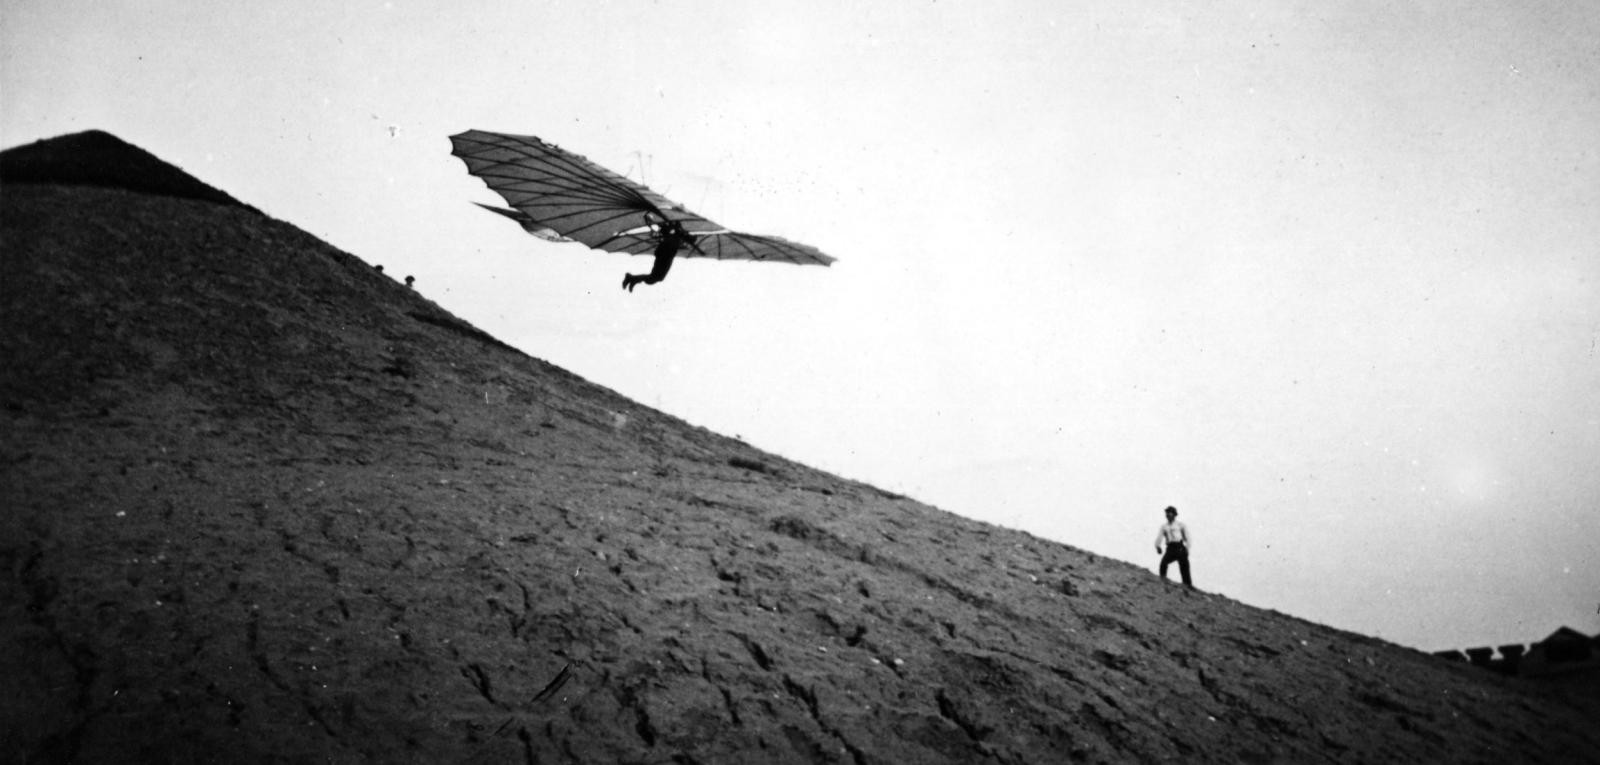 Немецкий «летающий человек», пионер авиации Отто Лилиенталь пилотирует один из своих новаторских планеров